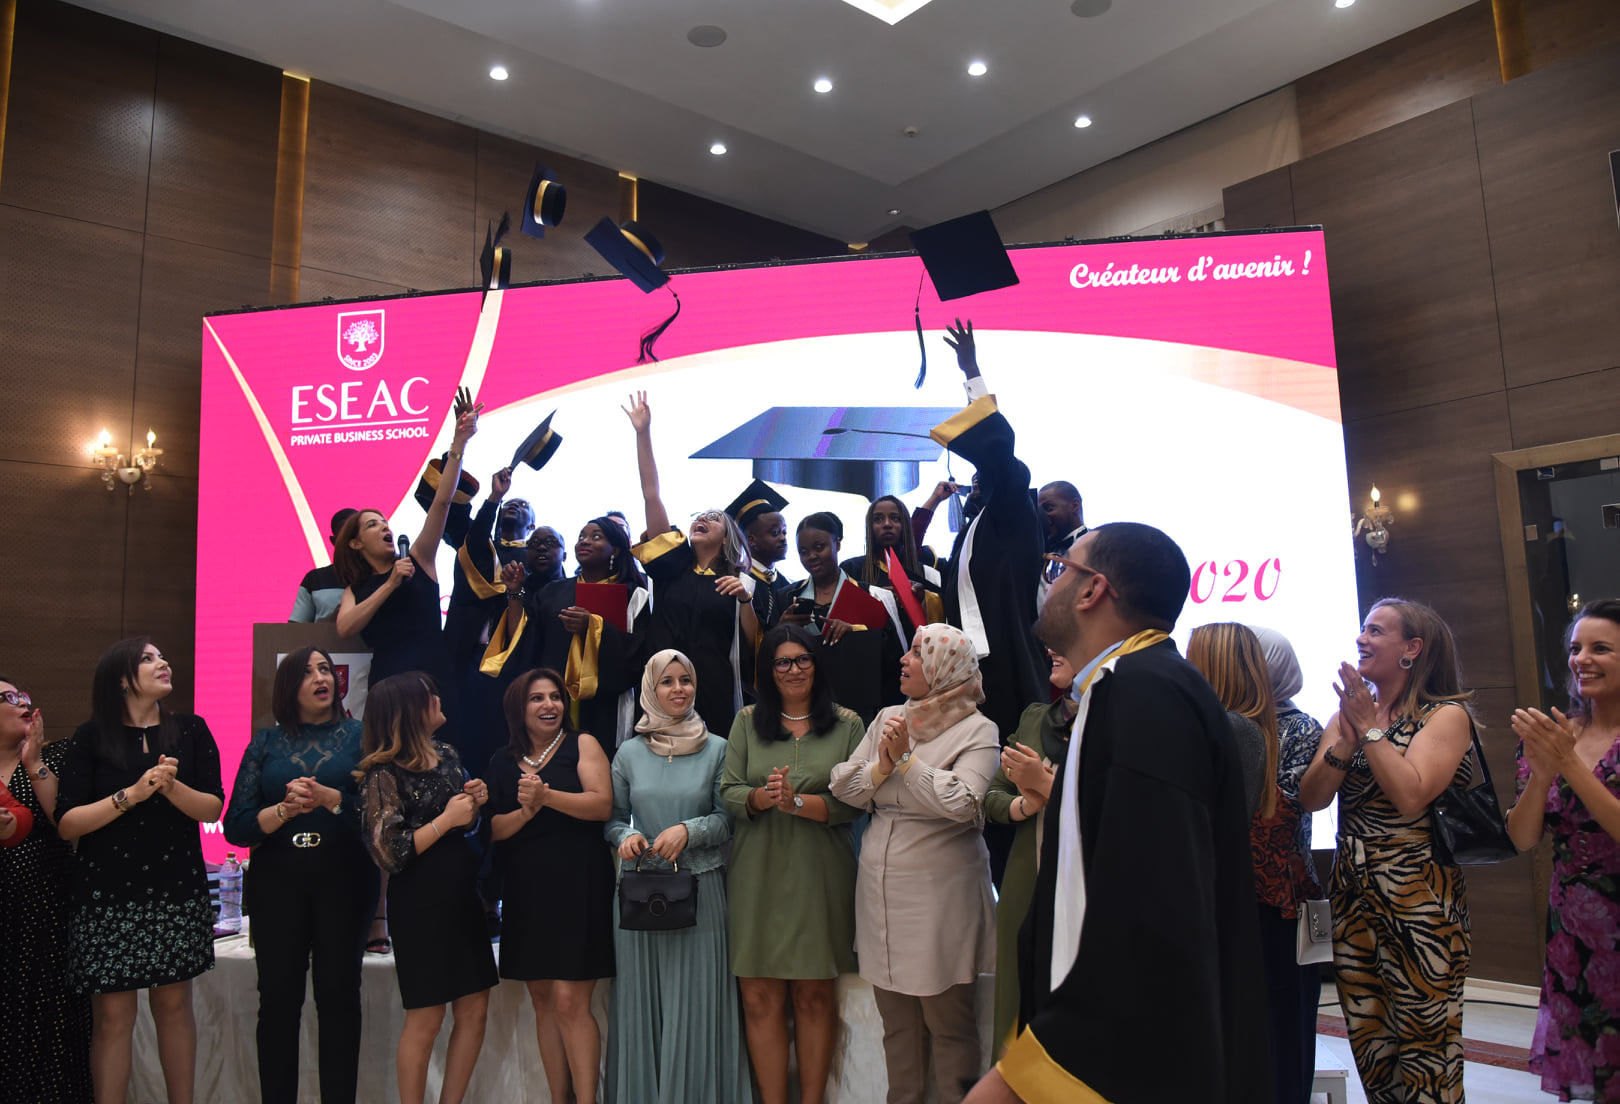 ESEAC Sfax célèbre la fin de l'année Universitaire 2019 - 2020